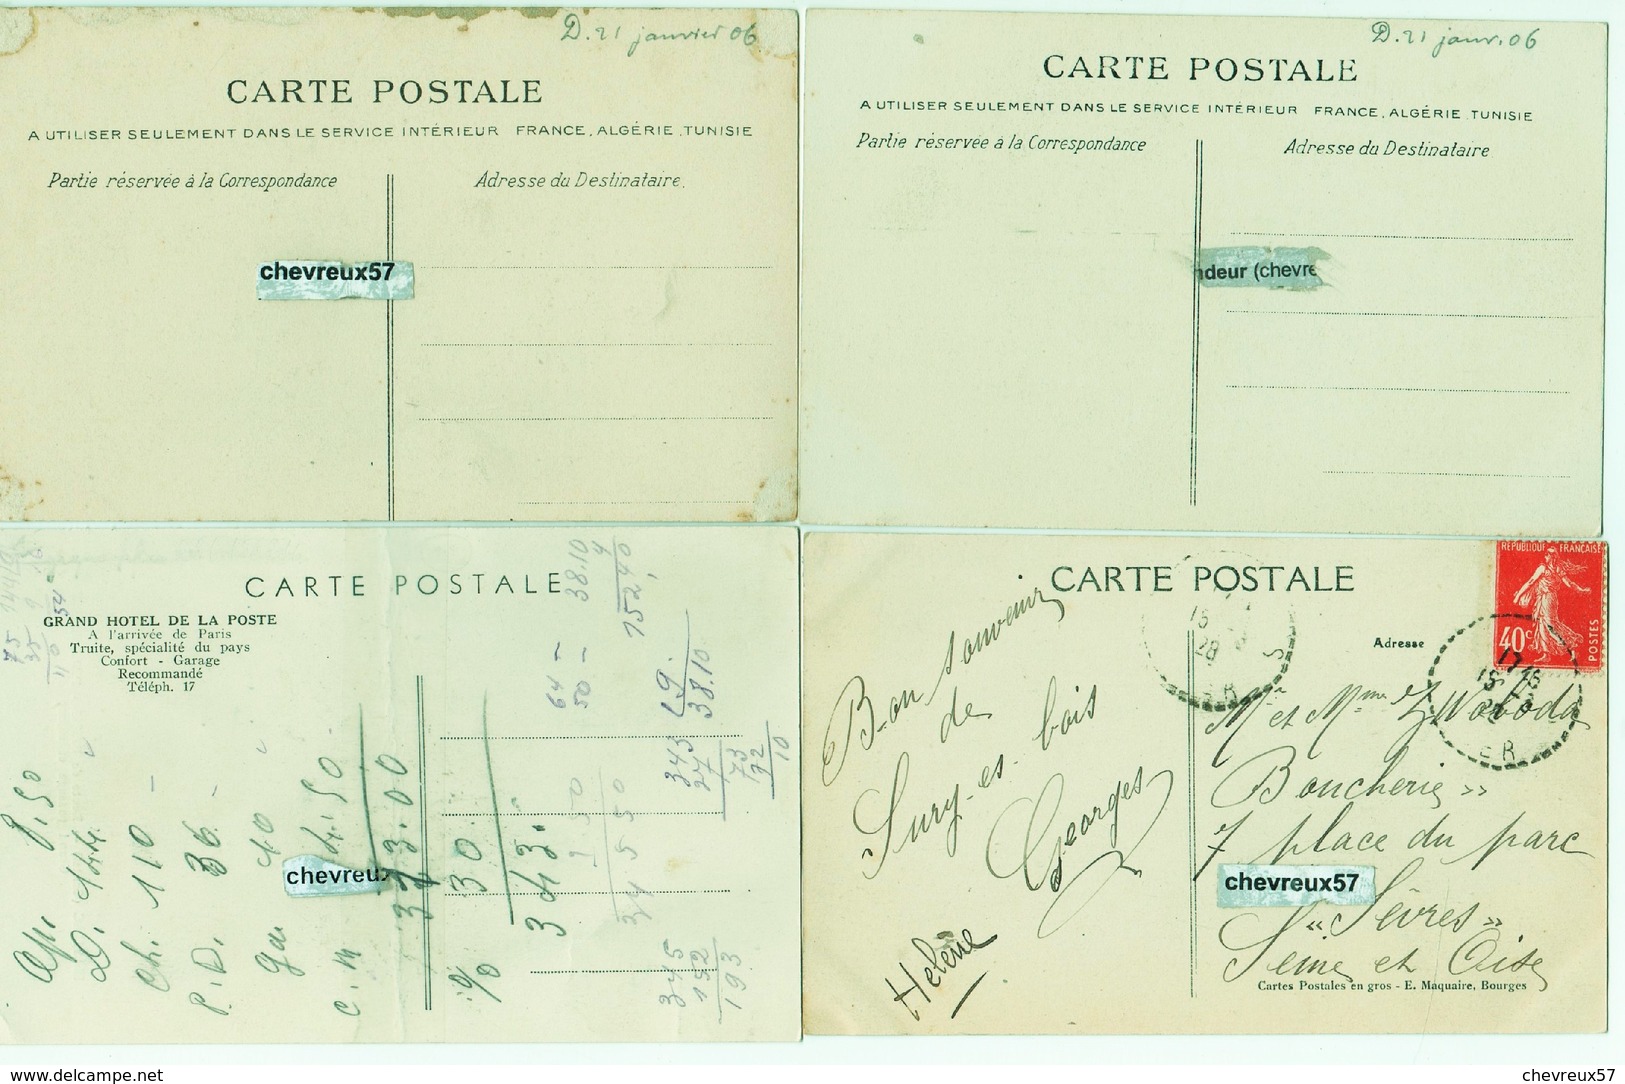 LOT 60 - VILLES ET VILLAGES DE FRANCE - 32 cartes anciennes dont 18 NORMANDIE